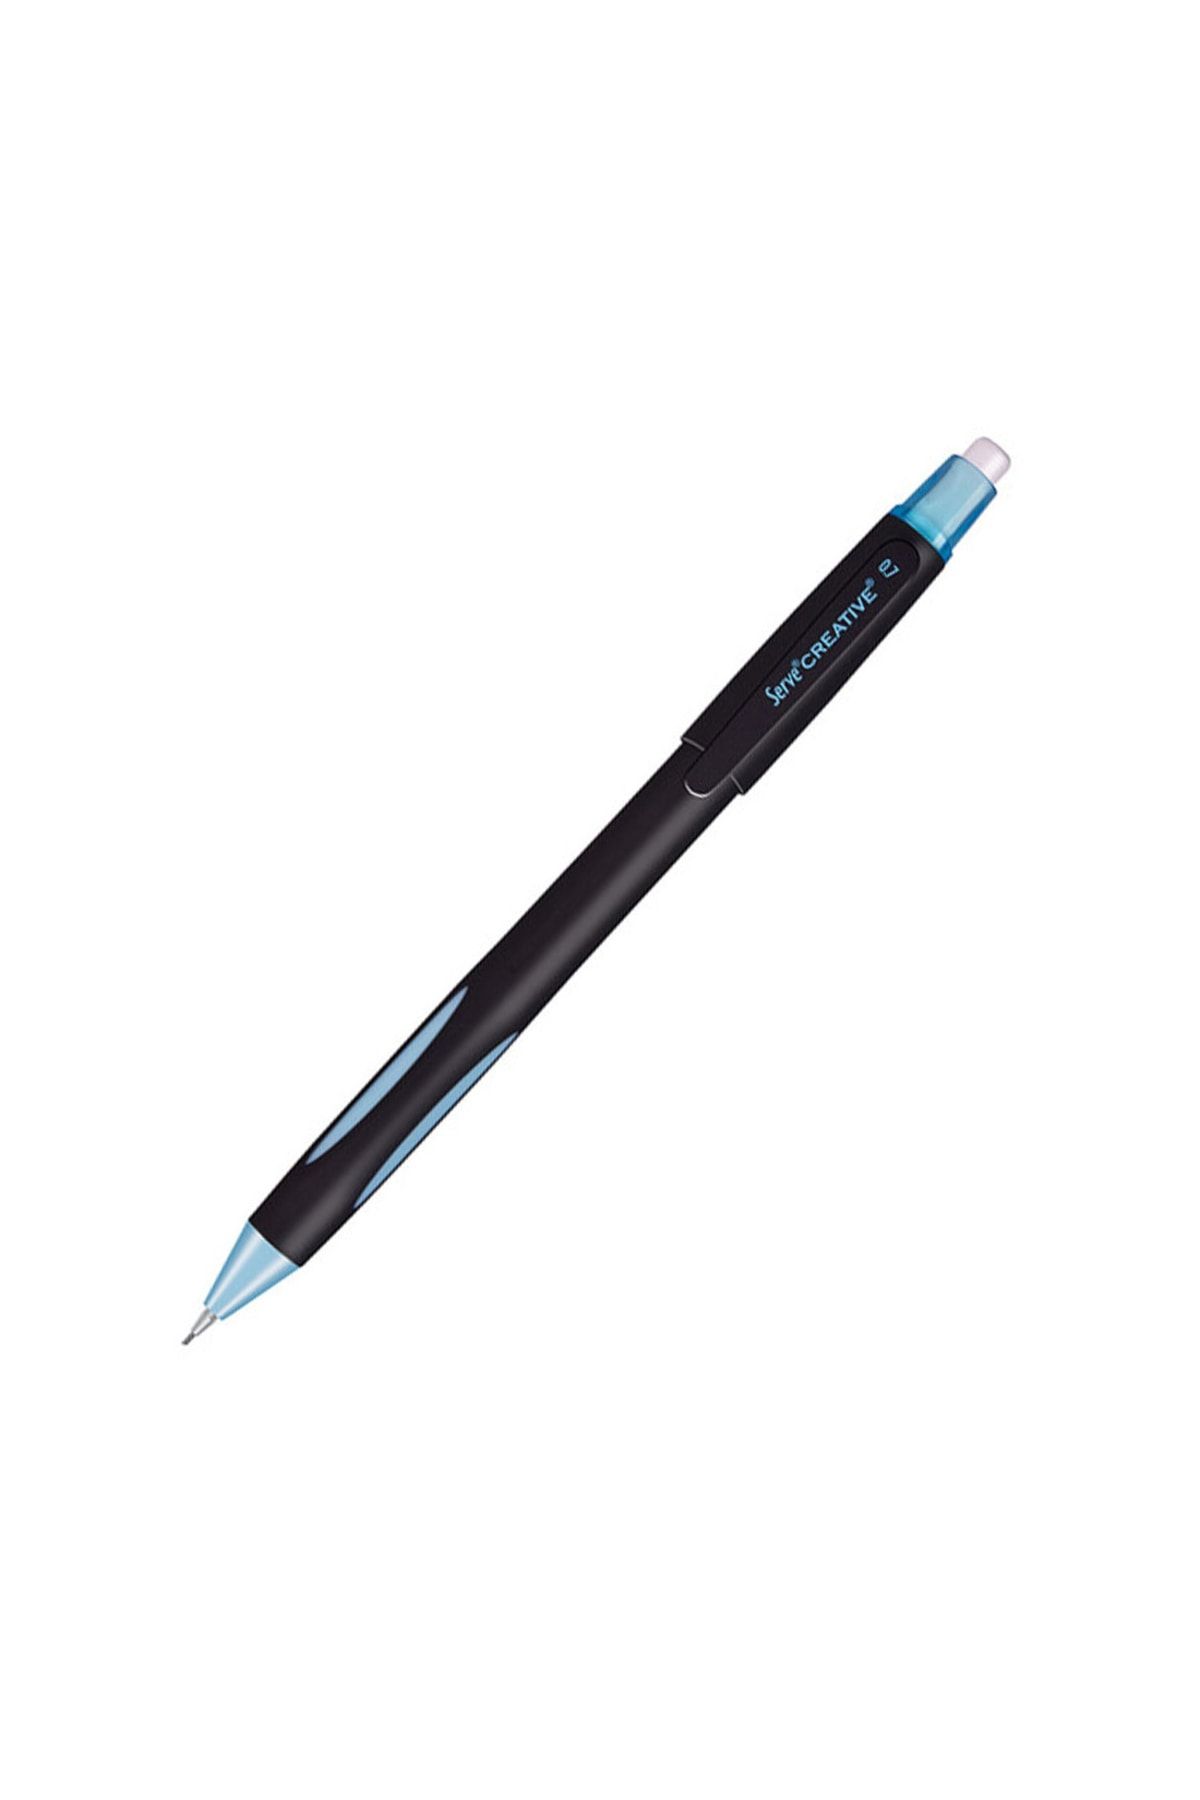 Serve Creative Mekanik Kurşun Kalem 0.7 Mm Açık Mavi